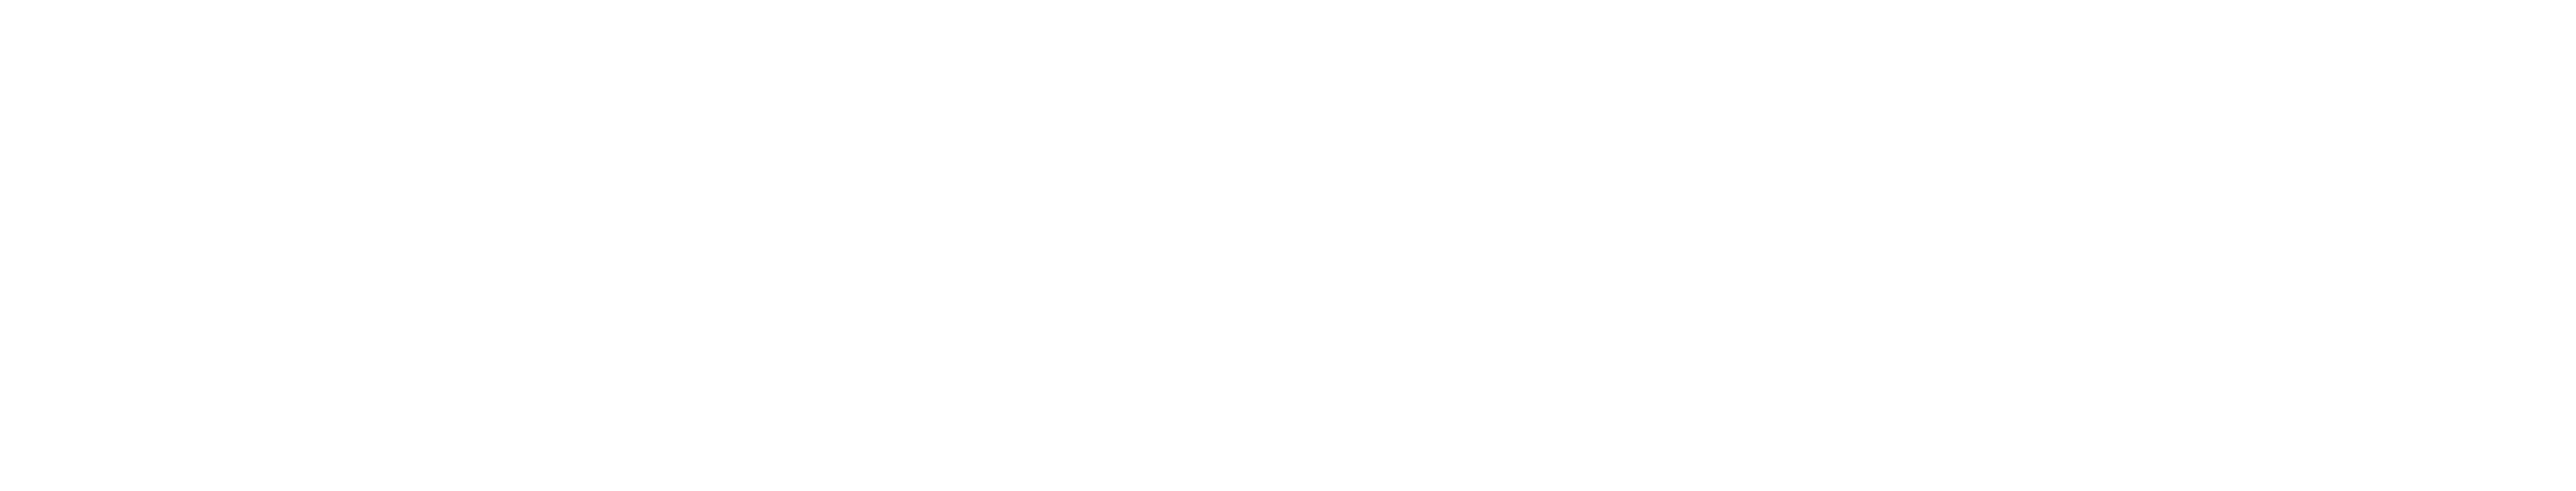 MetaChain Brand